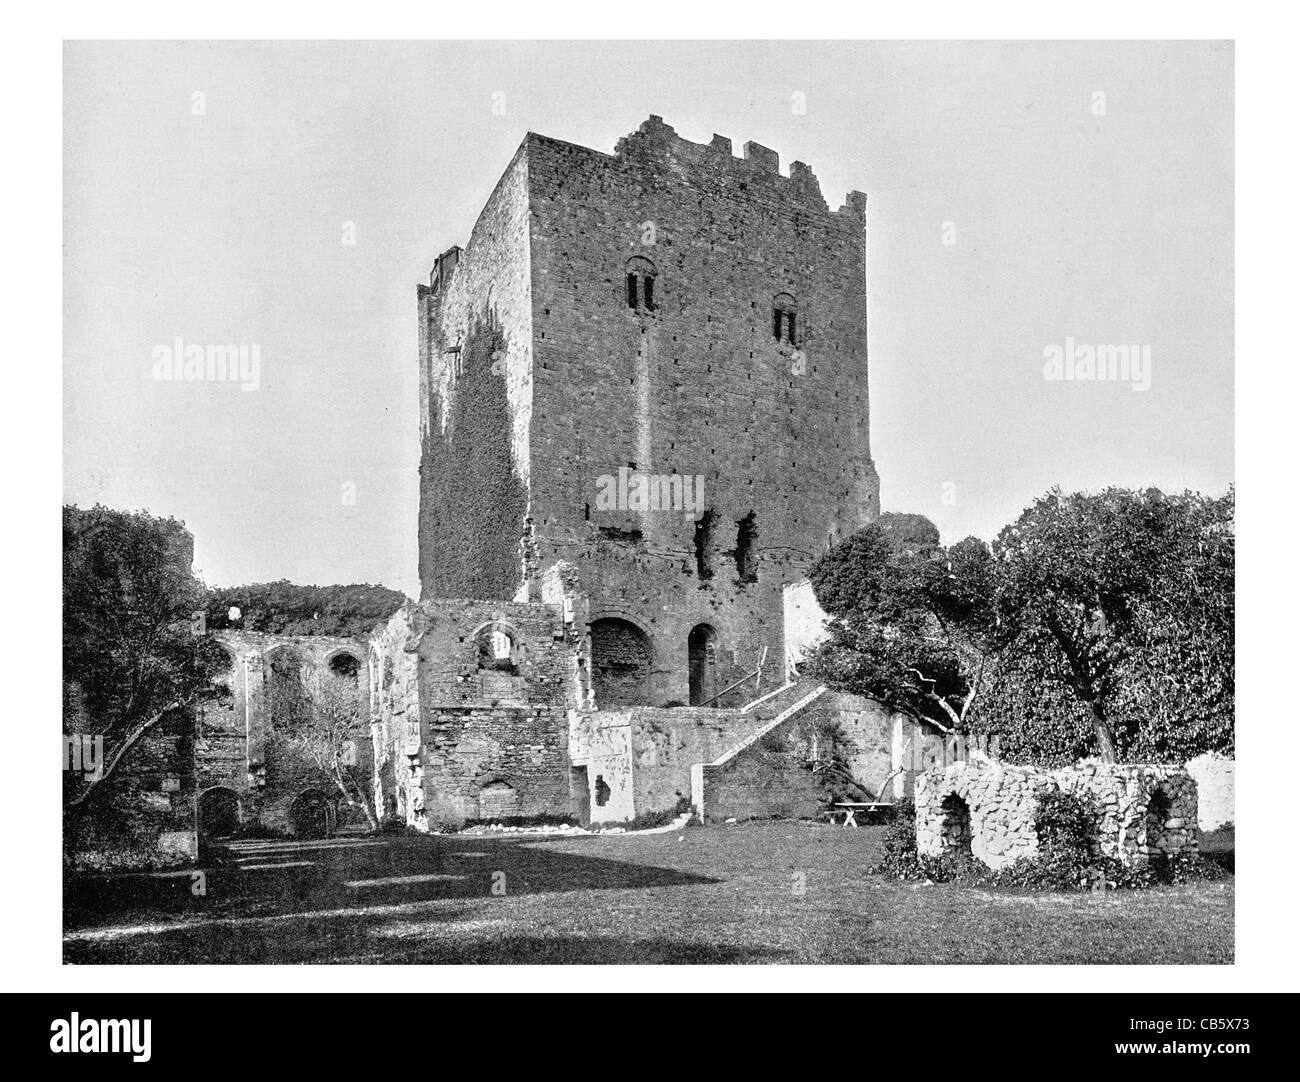 Castillo medieval de Portchester programado el monumento antiguo edificio catalogado de grado I English Heritage Foto de stock